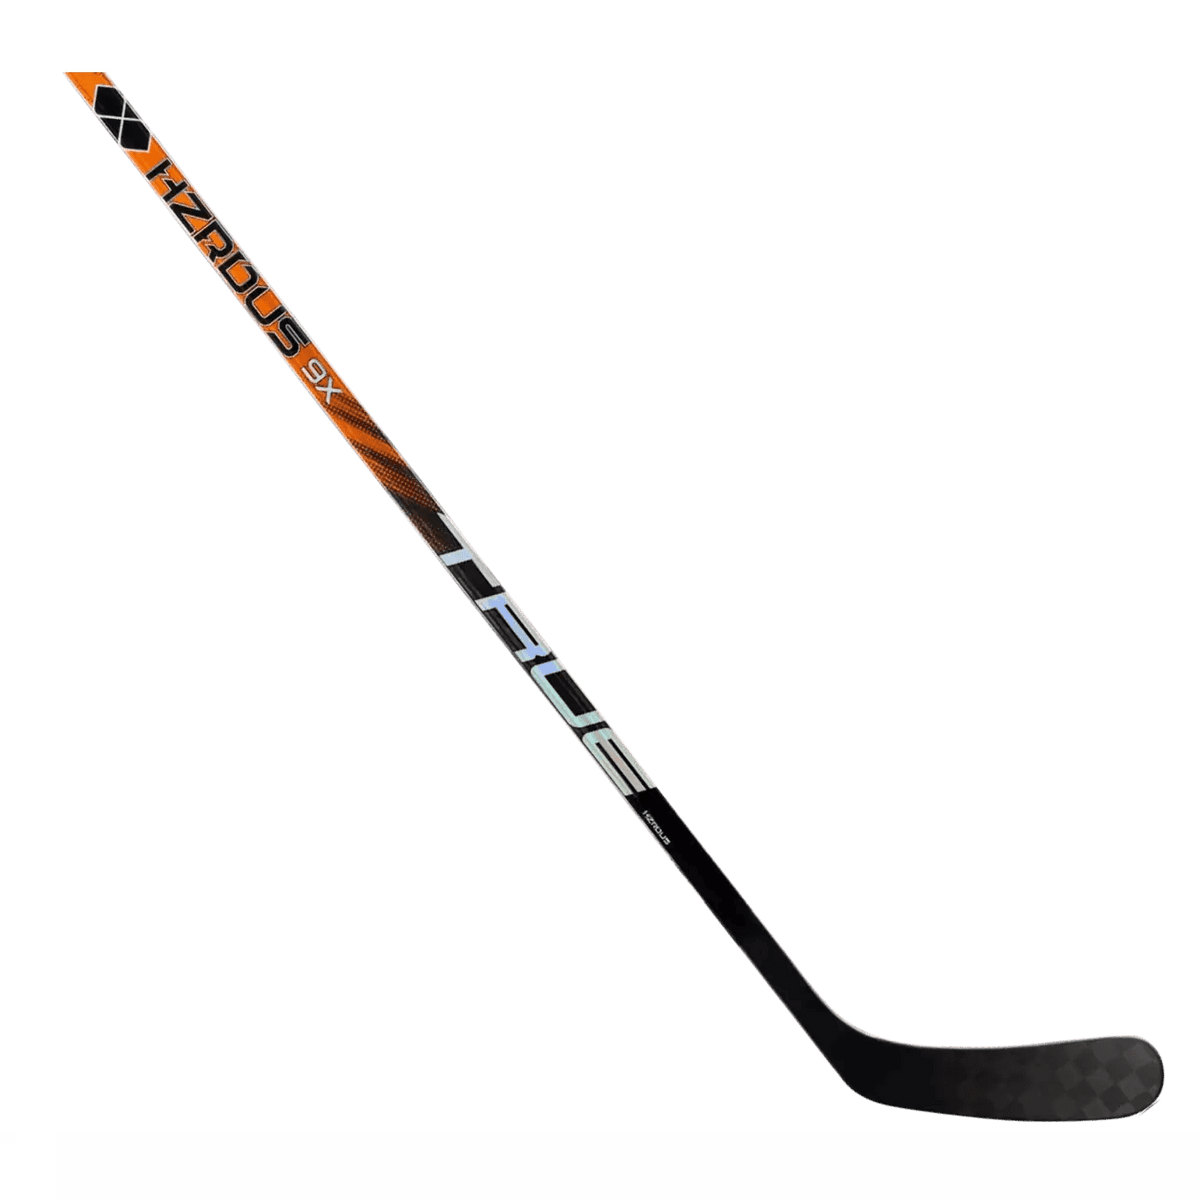 True Hzrdus 9X Ice Hockey Stick Intermediate